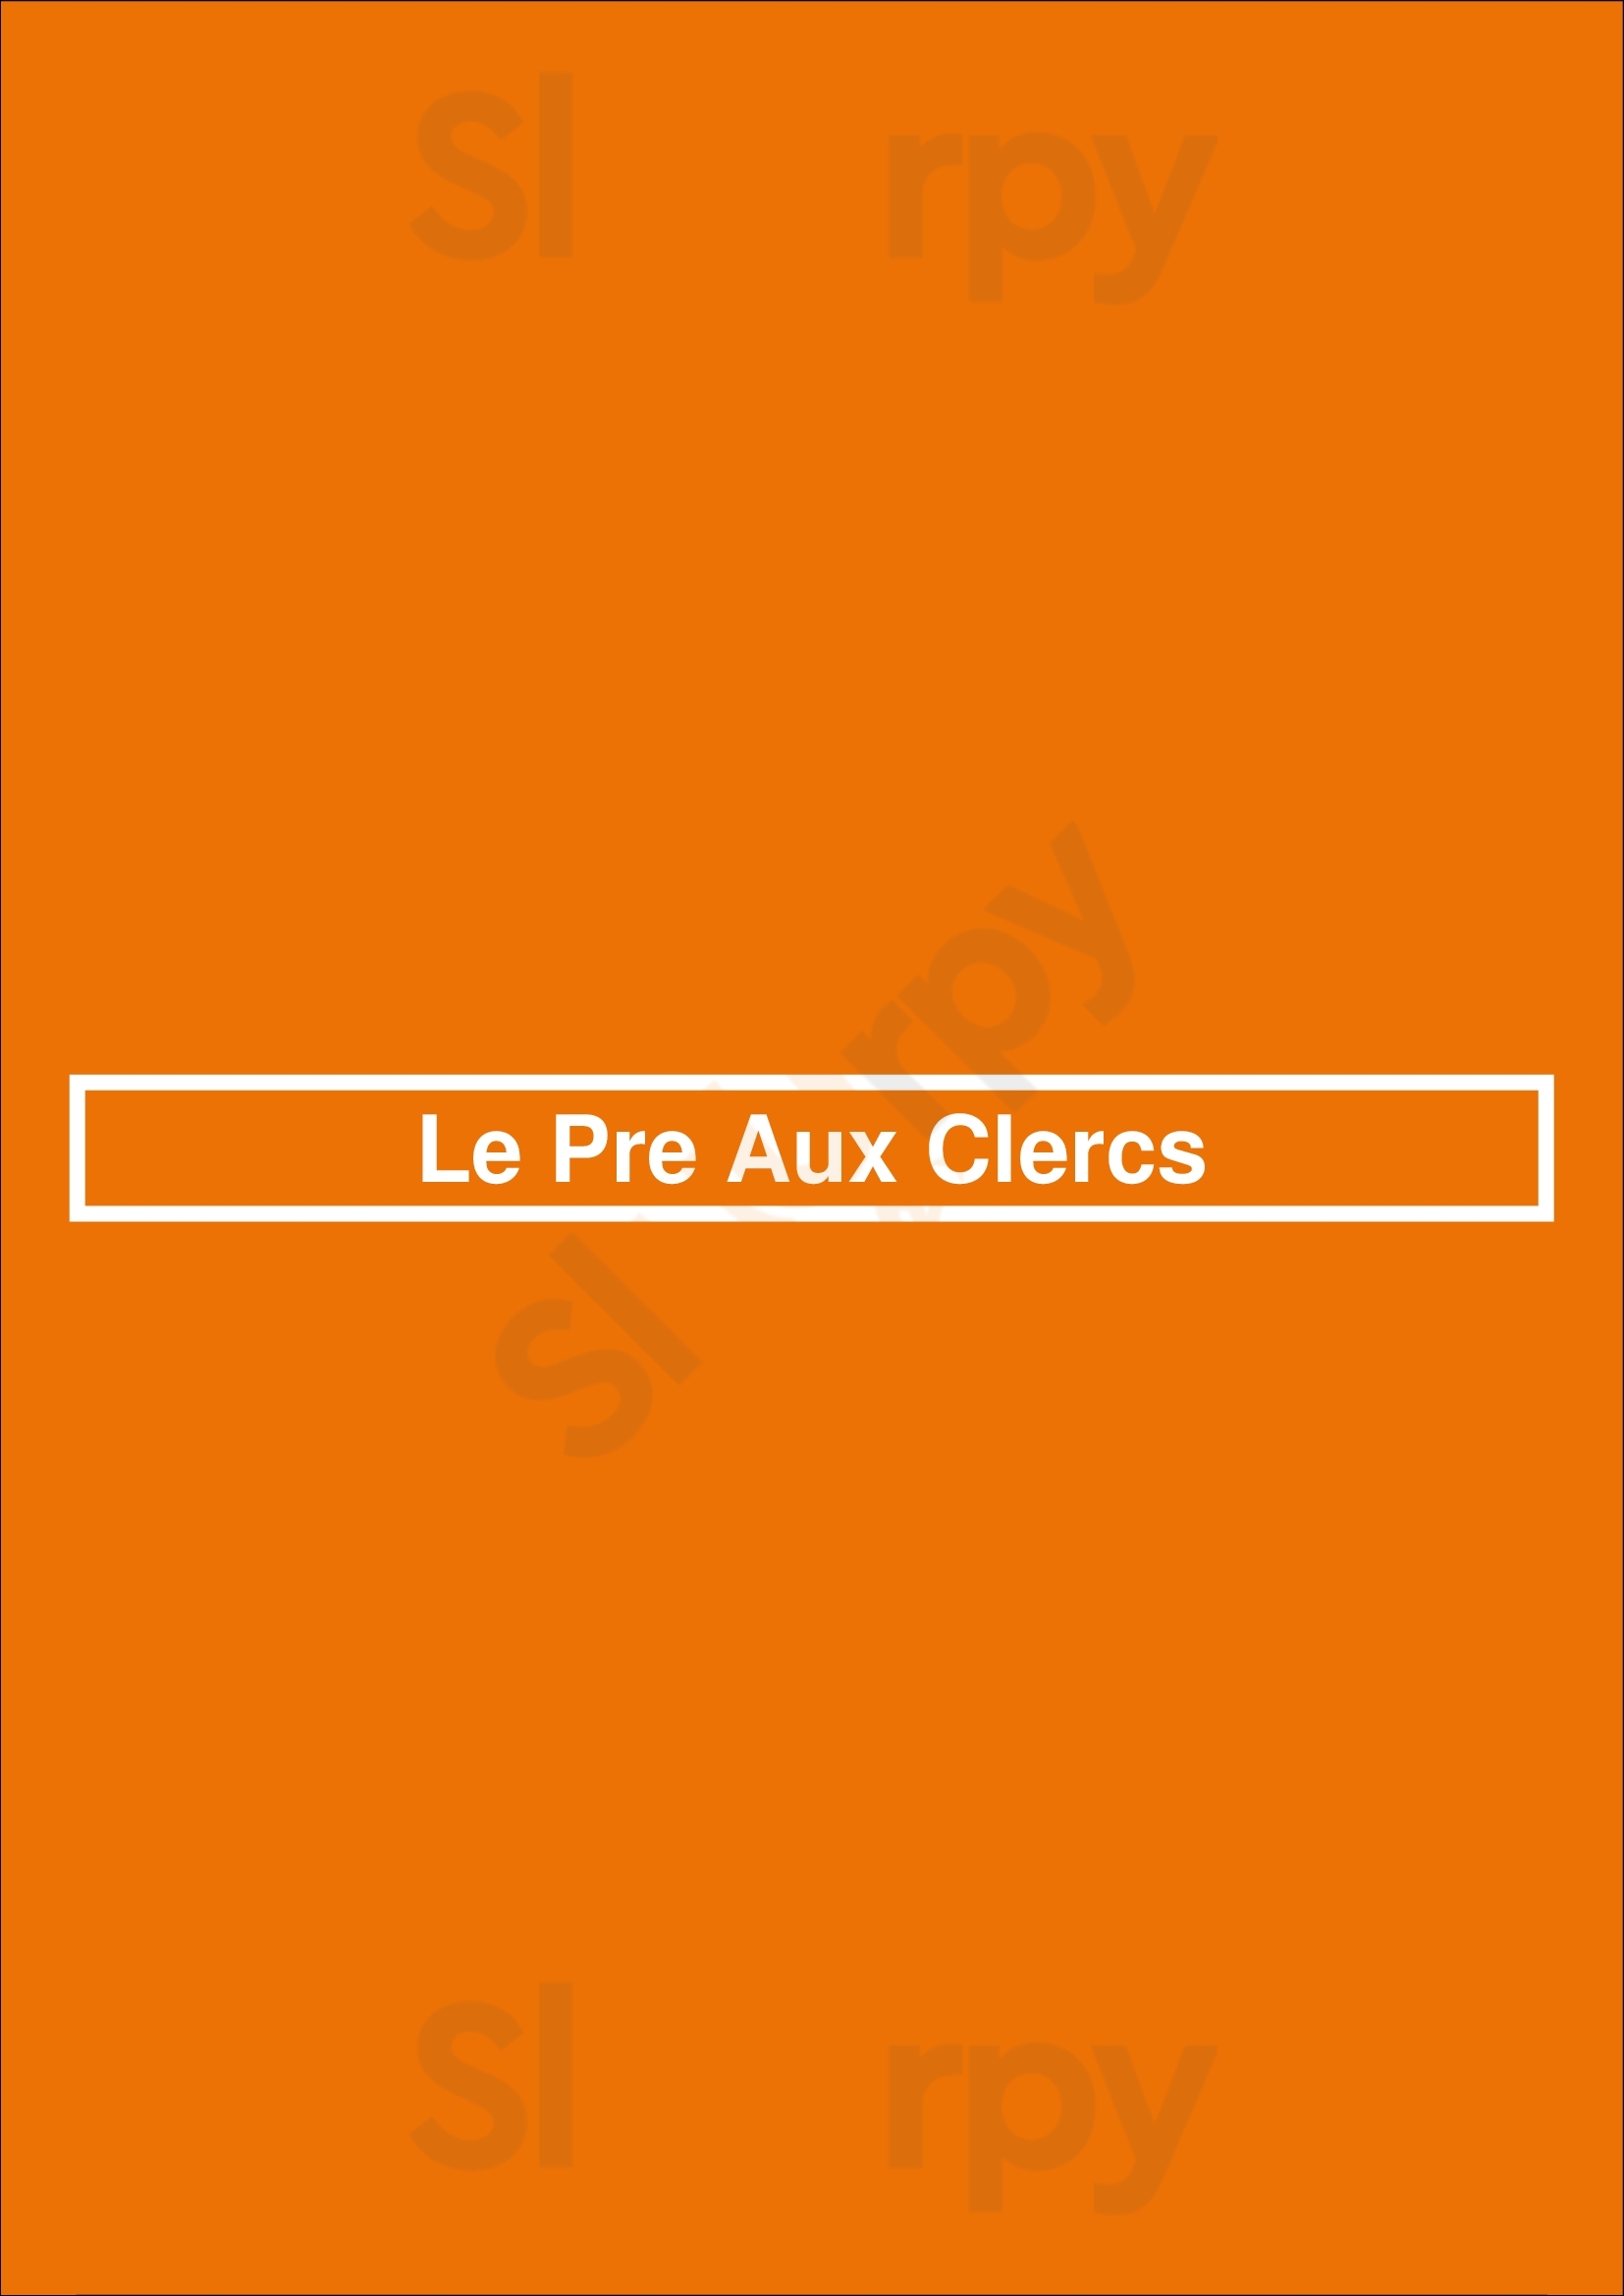 Le Pre Aux Clercs Bruxelles Menu - 1